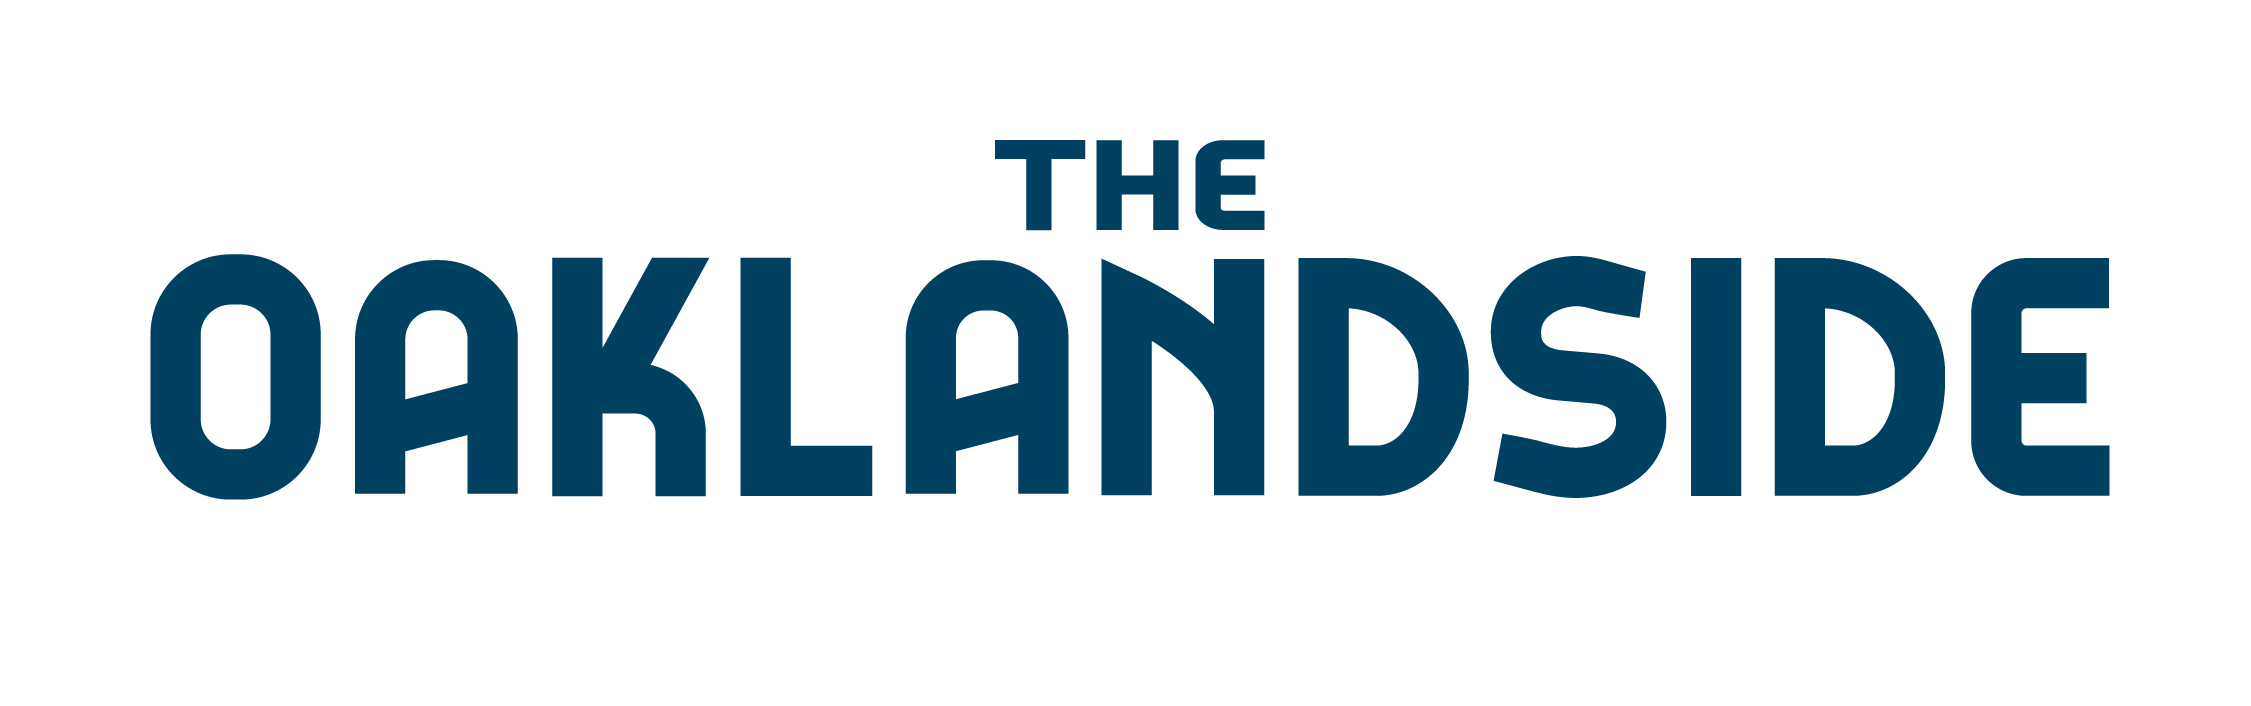 TheOaklandside_Logo (1).png